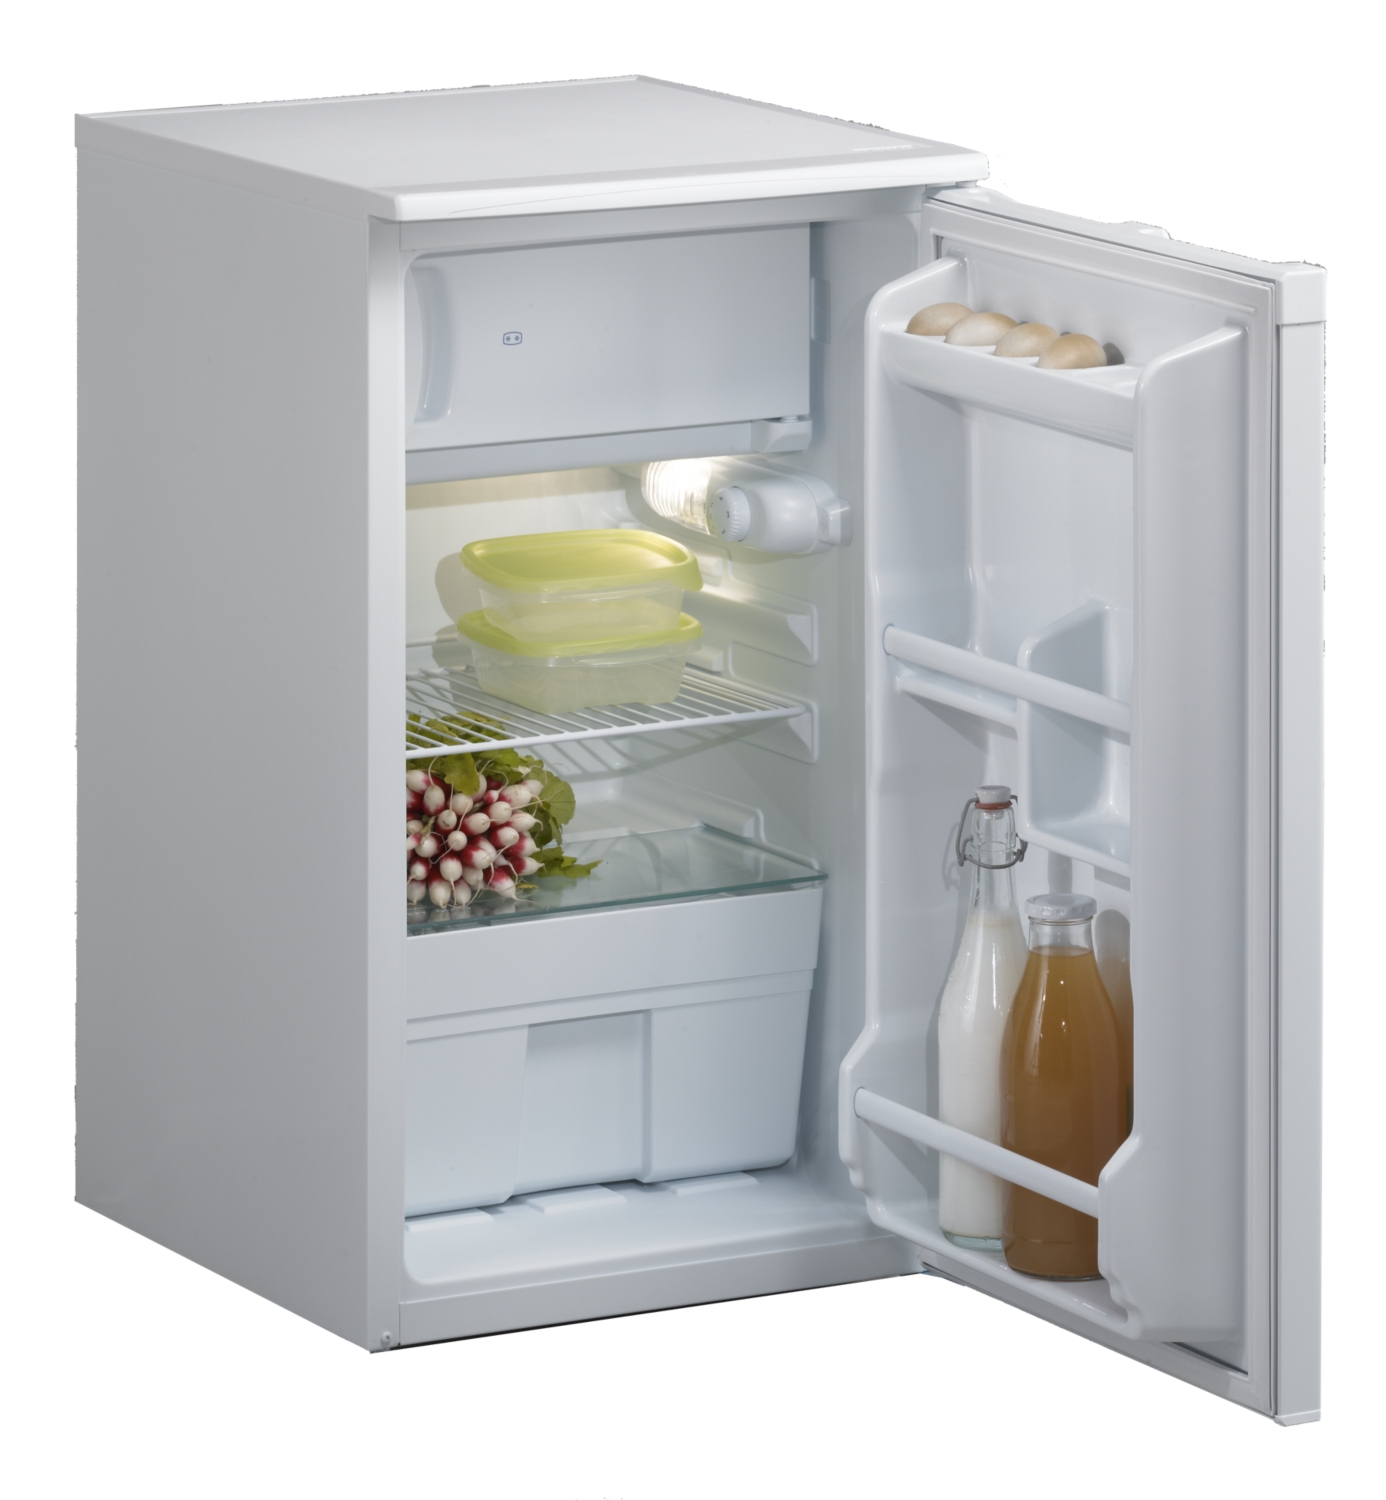  Réfrigérateur pour cuisinette Cadette MRT4055Z03 